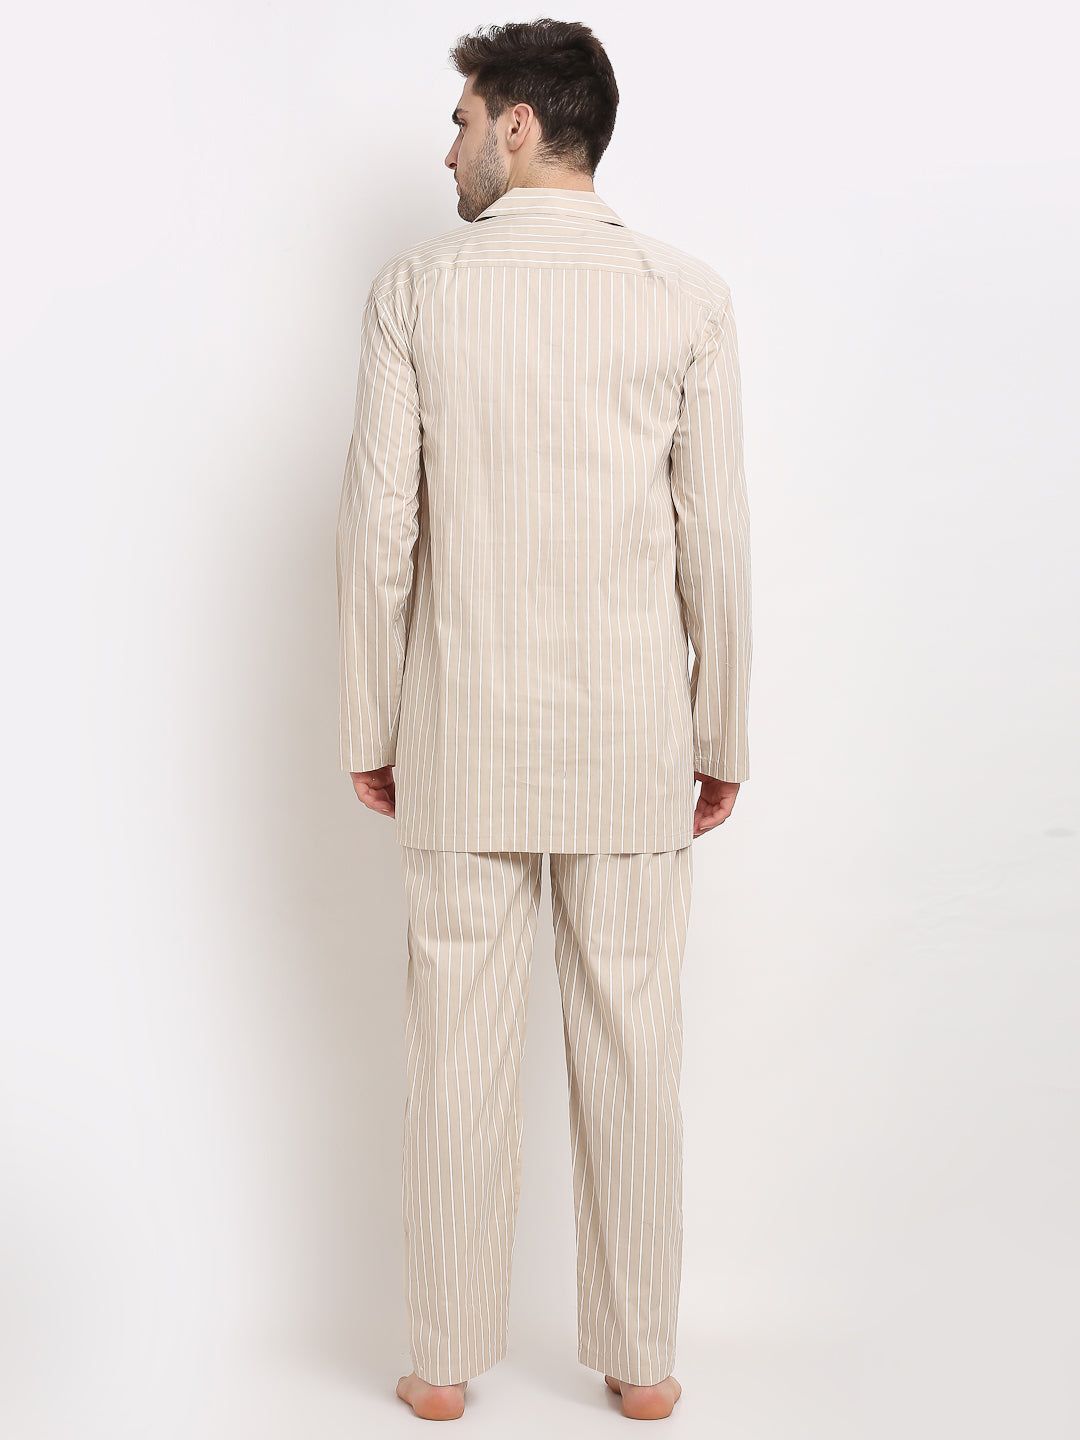 Men's Cream Cotton Striped Night Suits ( GNS 002Cream ) - Jainish